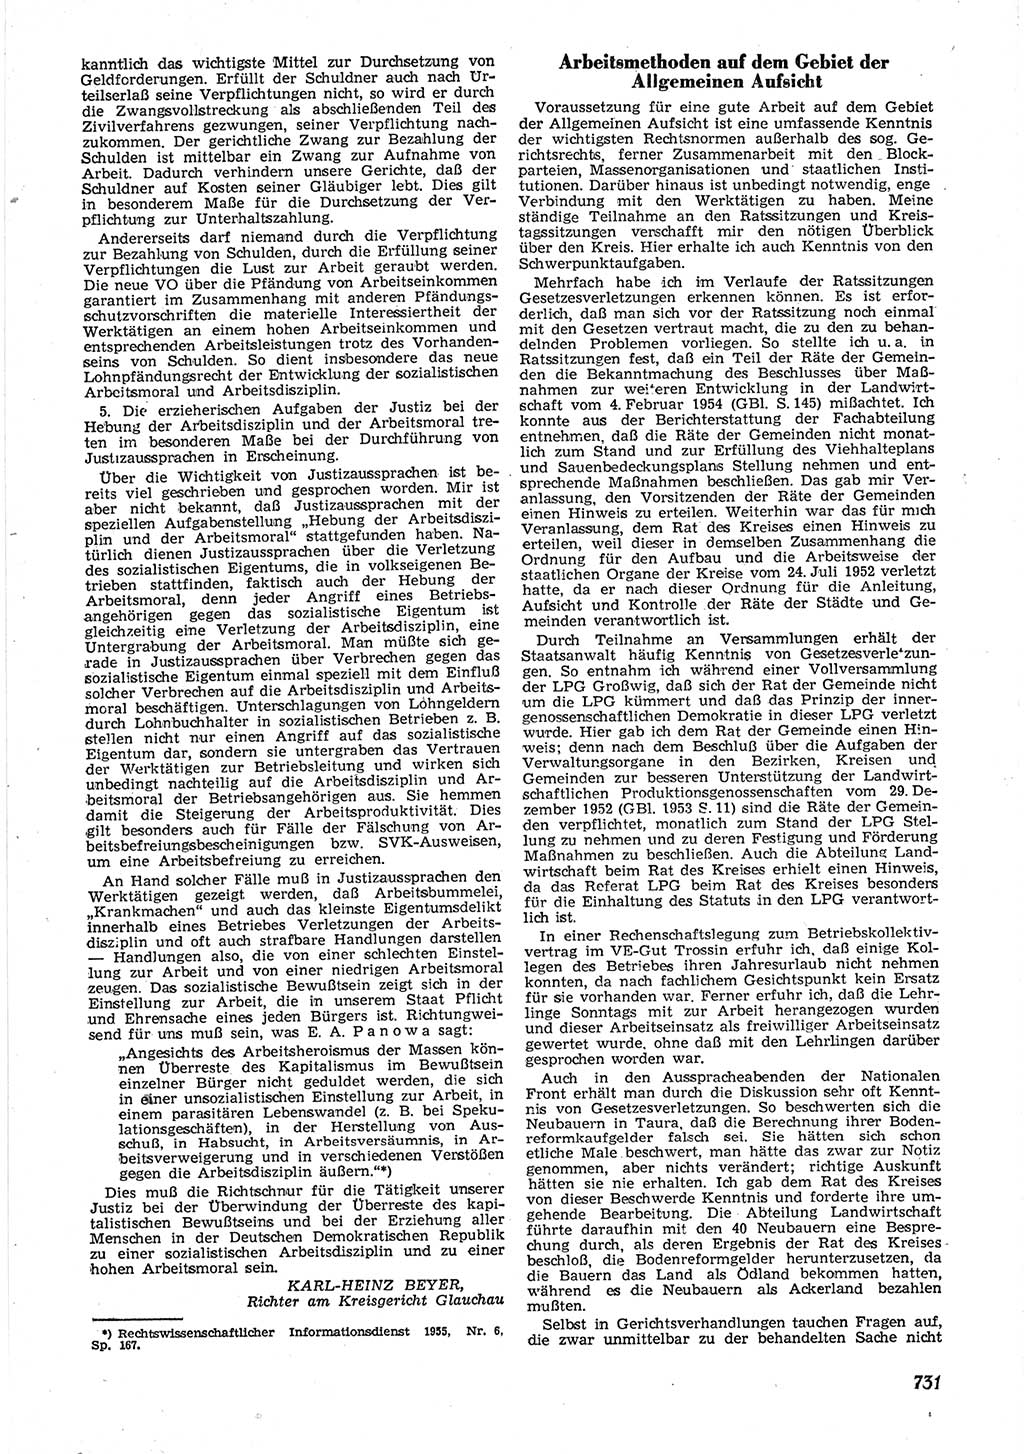 Neue Justiz (NJ), Zeitschrift für Recht und Rechtswissenschaft [Deutsche Demokratische Republik (DDR)], 9. Jahrgang 1955, Seite 731 (NJ DDR 1955, S. 731)